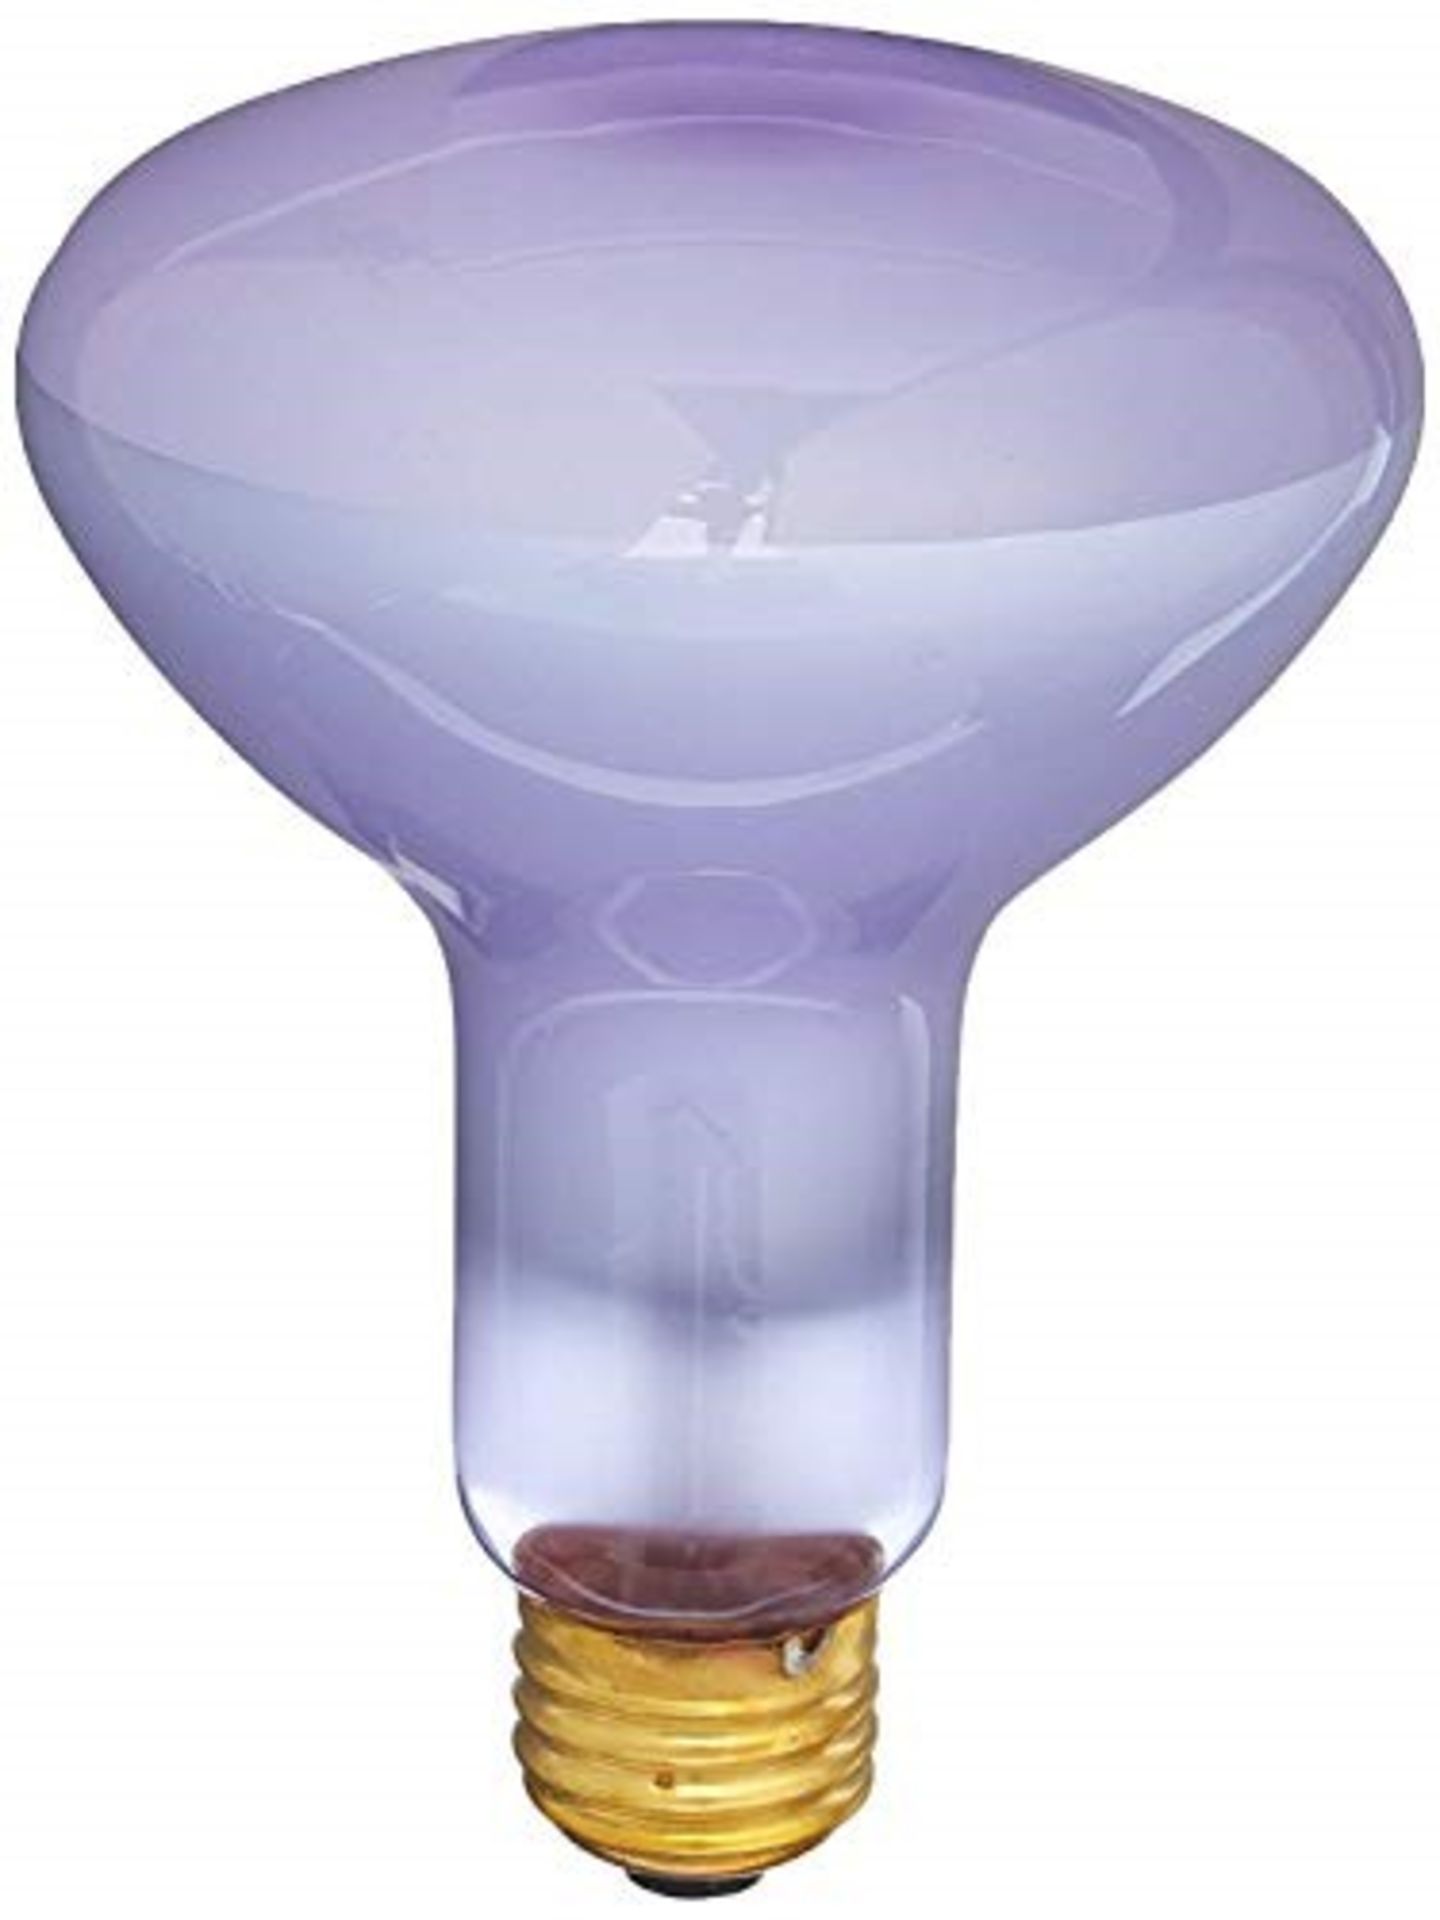 Exo Terra Daylight Basking Spot Bulb 150 W